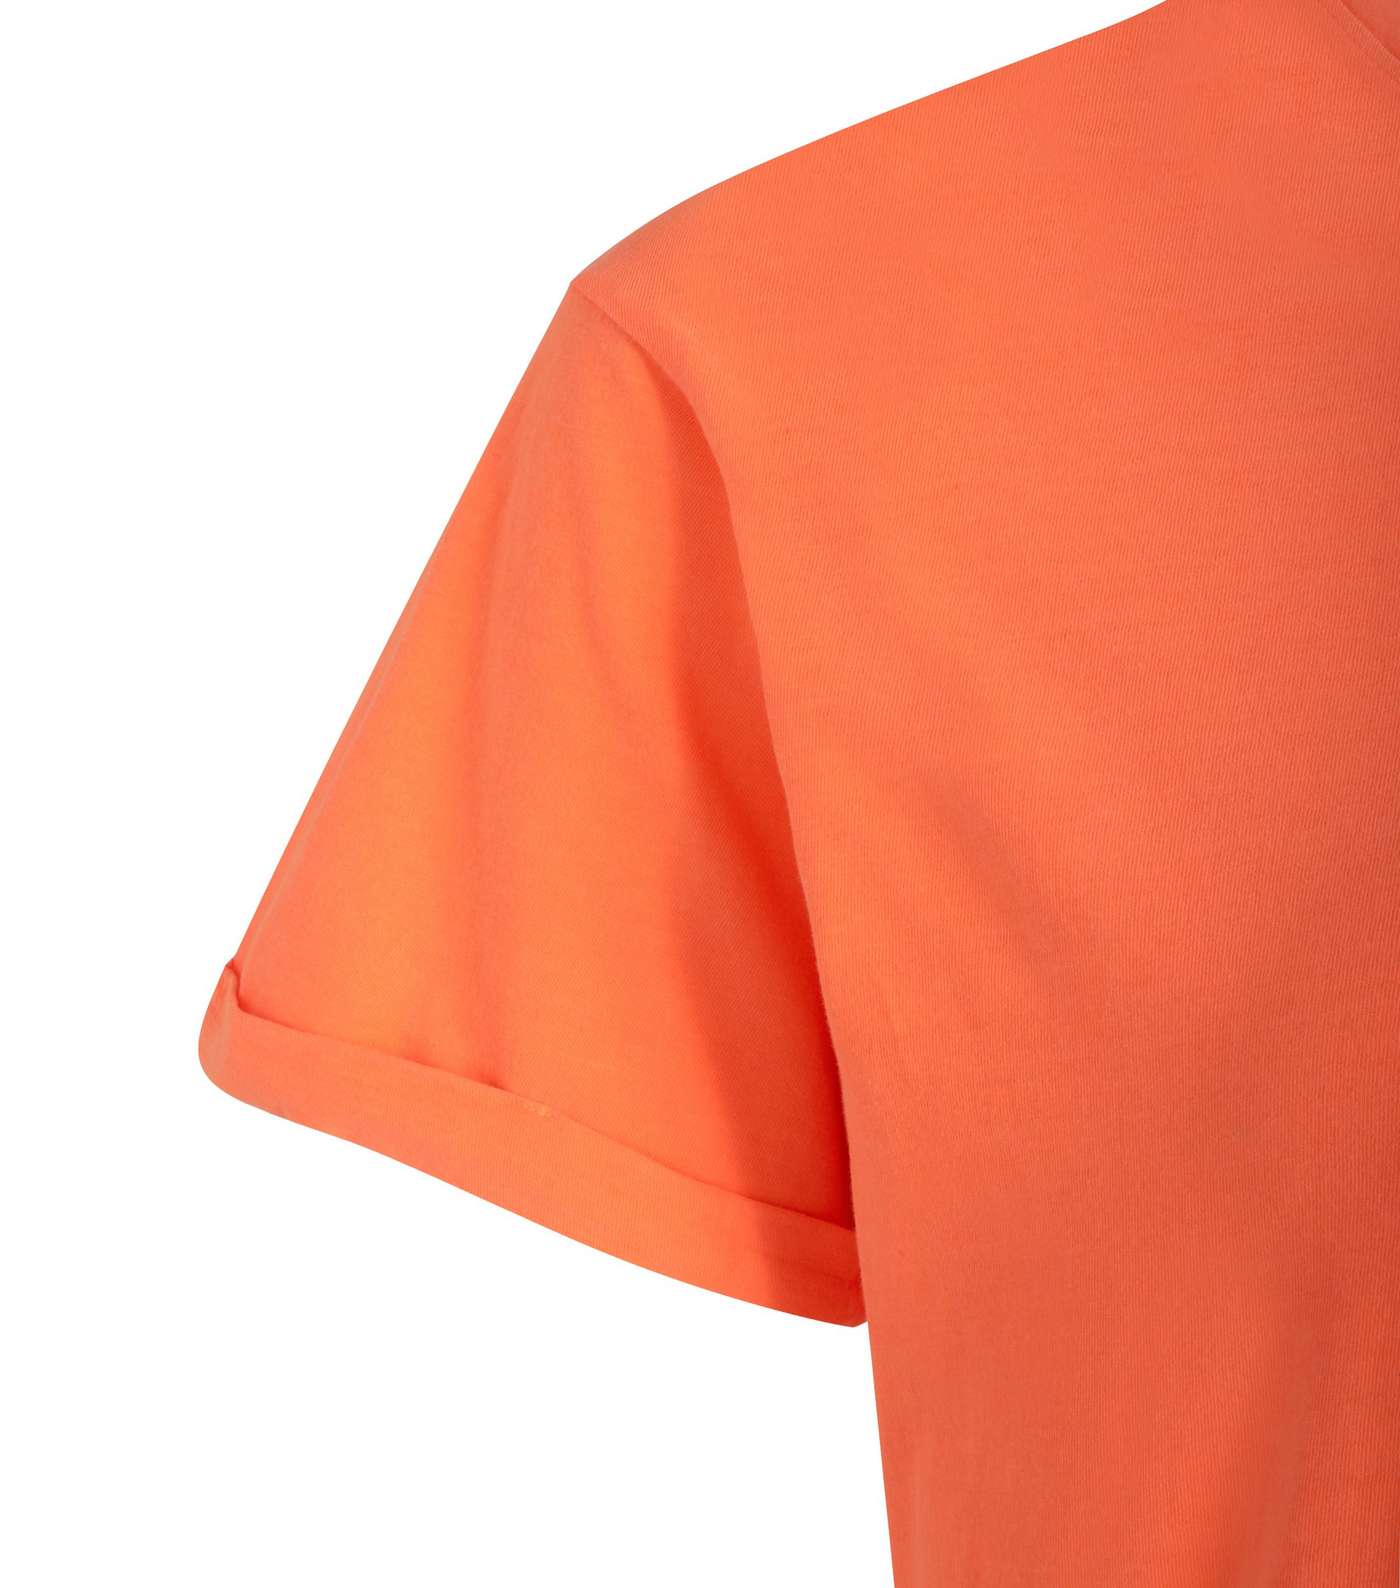 Curves Orange Short Sleeve Long T-Shirt Image 3